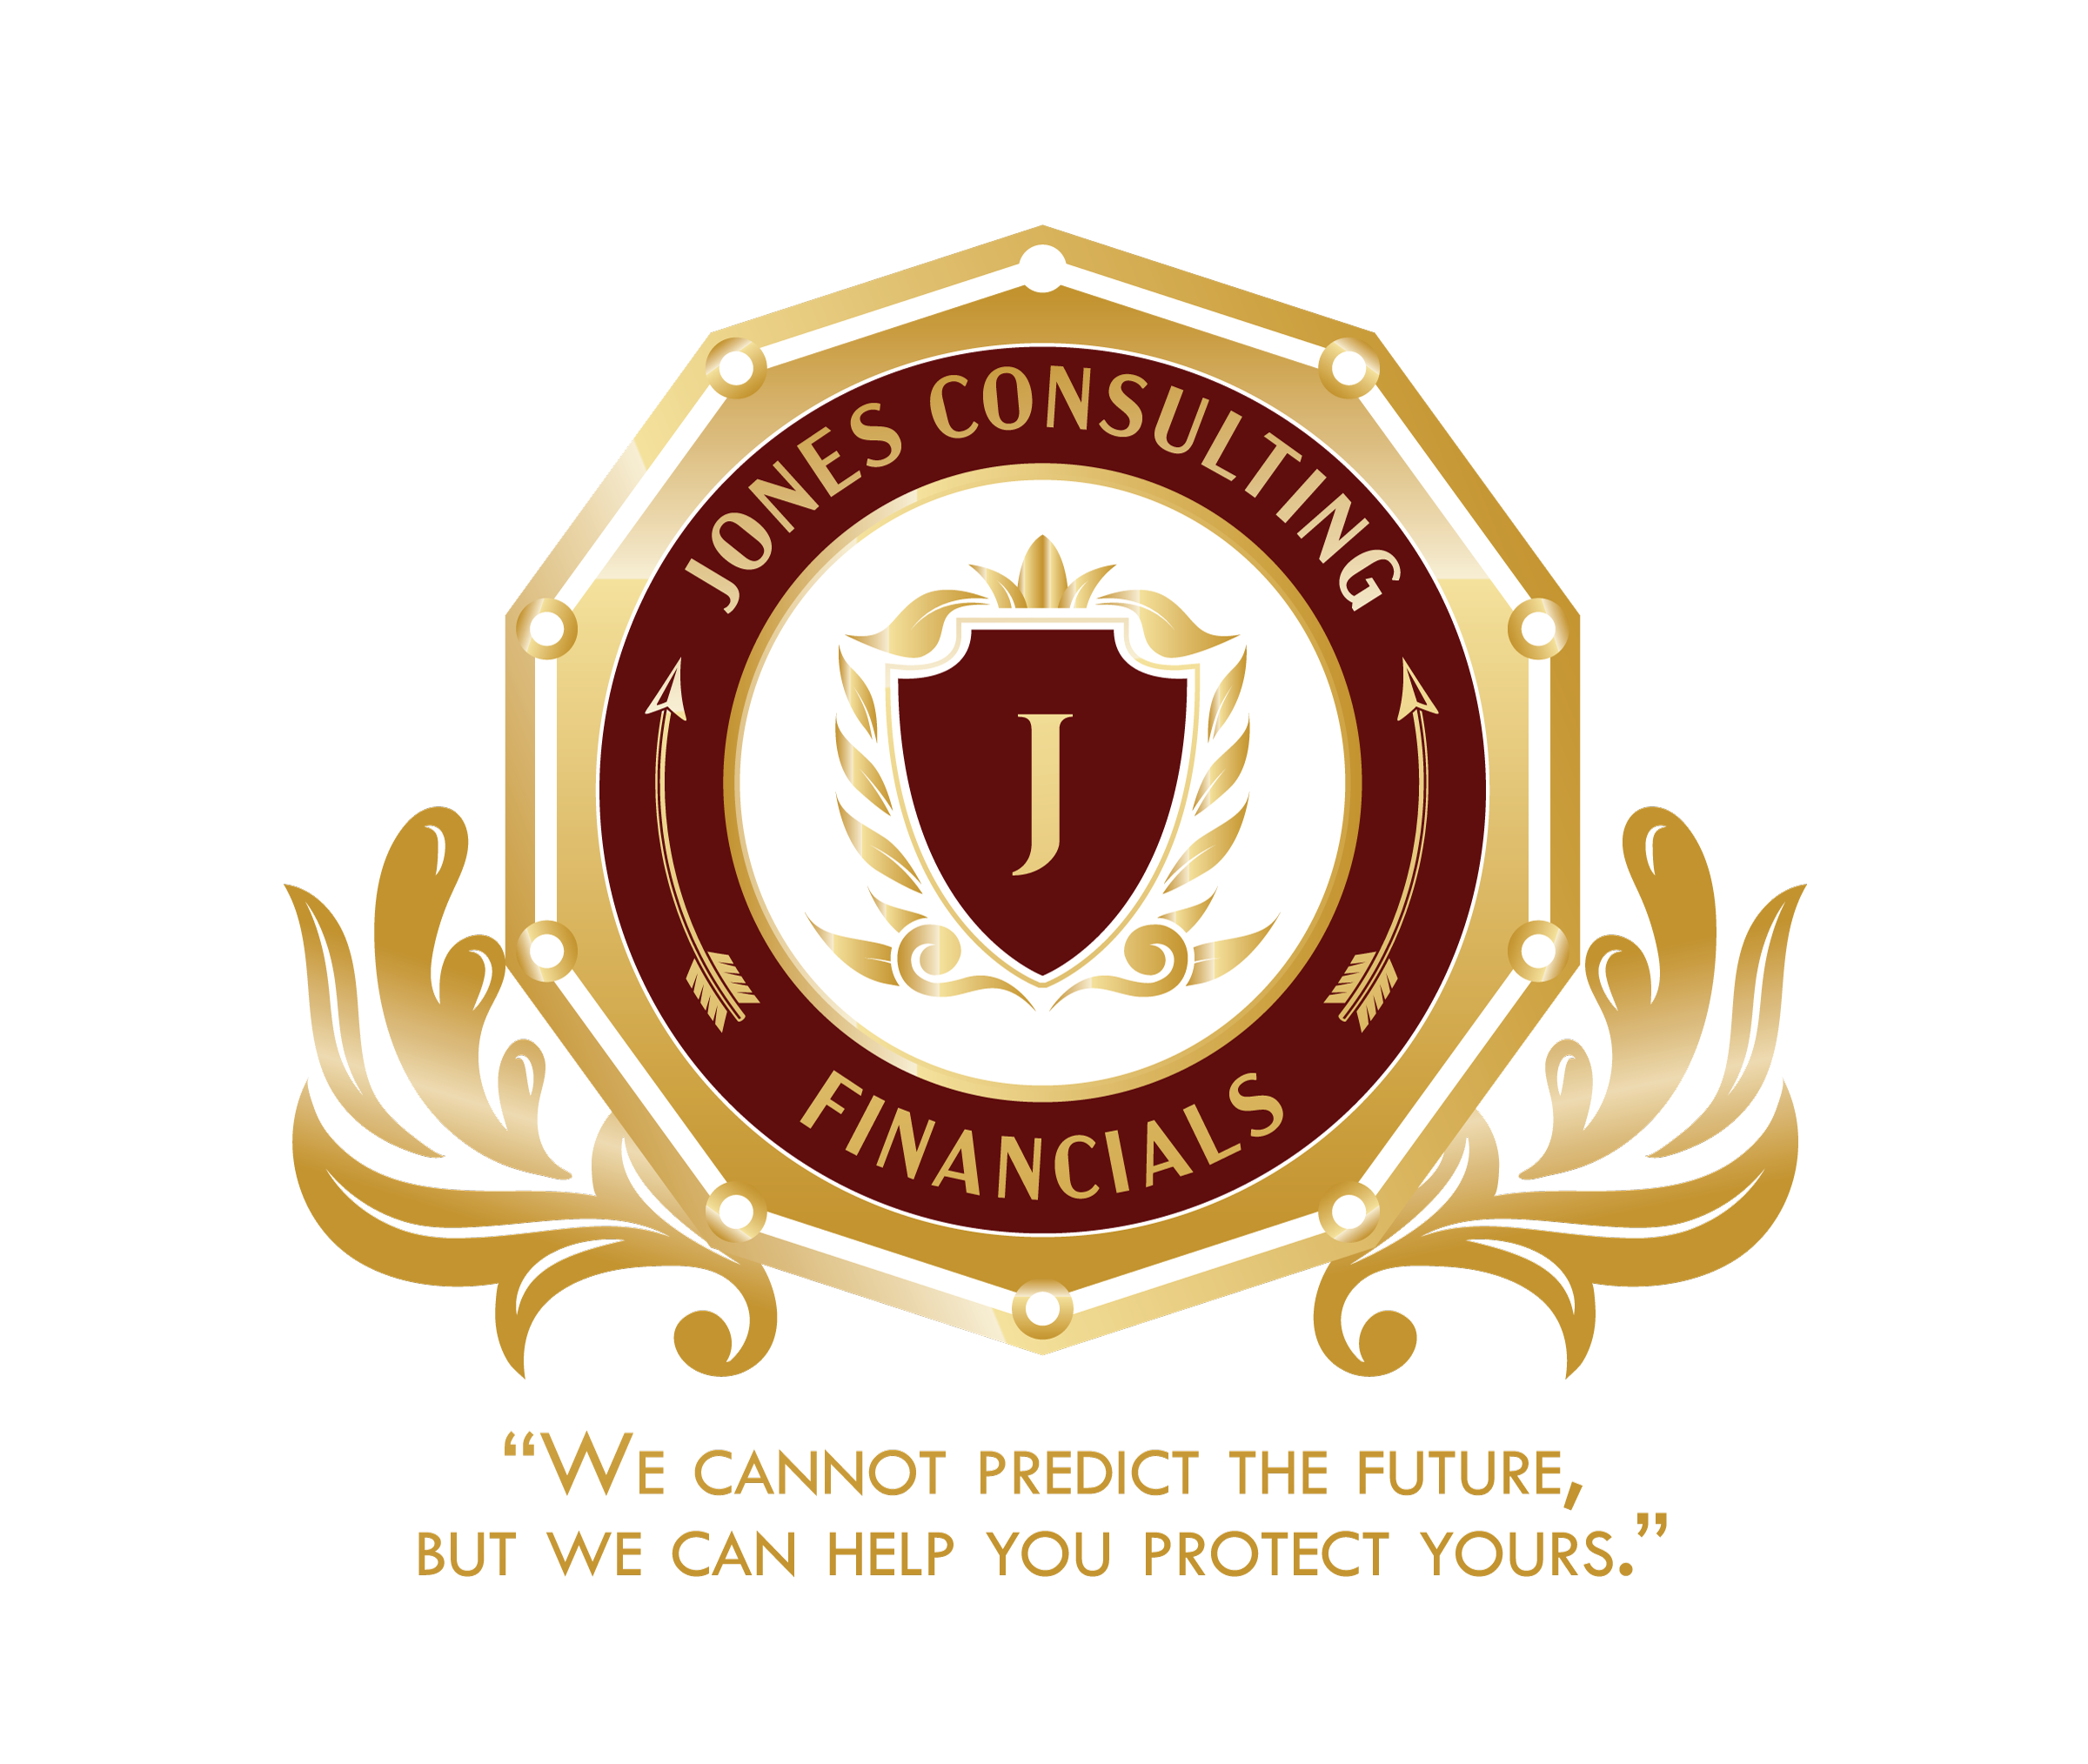 Jones Consulting Financials LLC